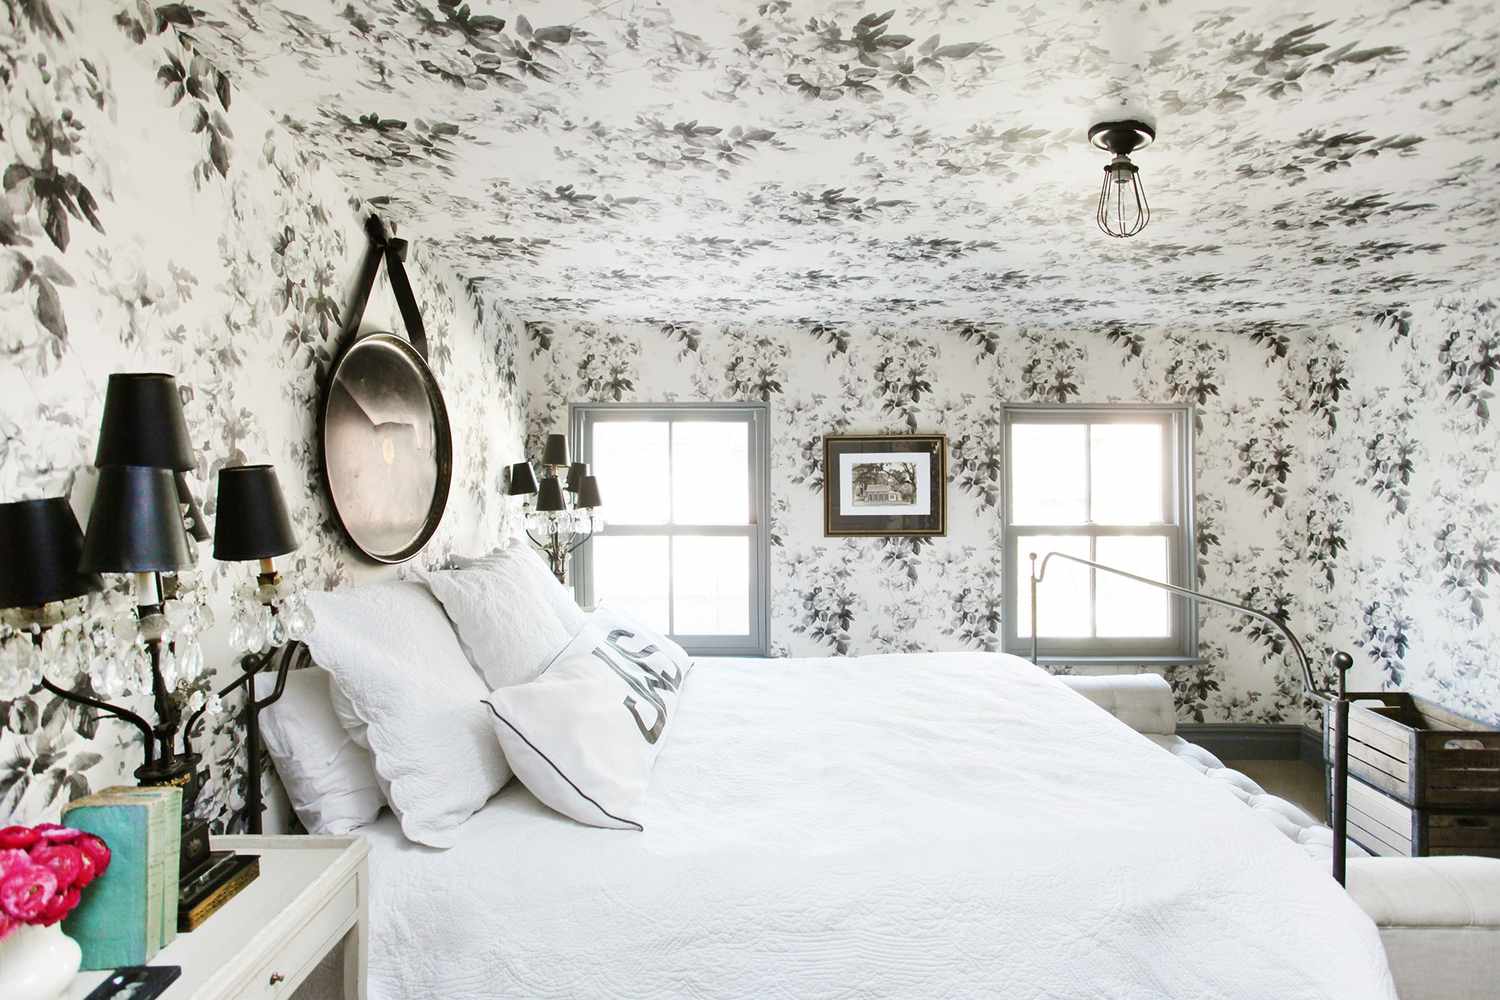 Schwarz-weiße Tapete an Decke und Wänden im Schlafzimmer